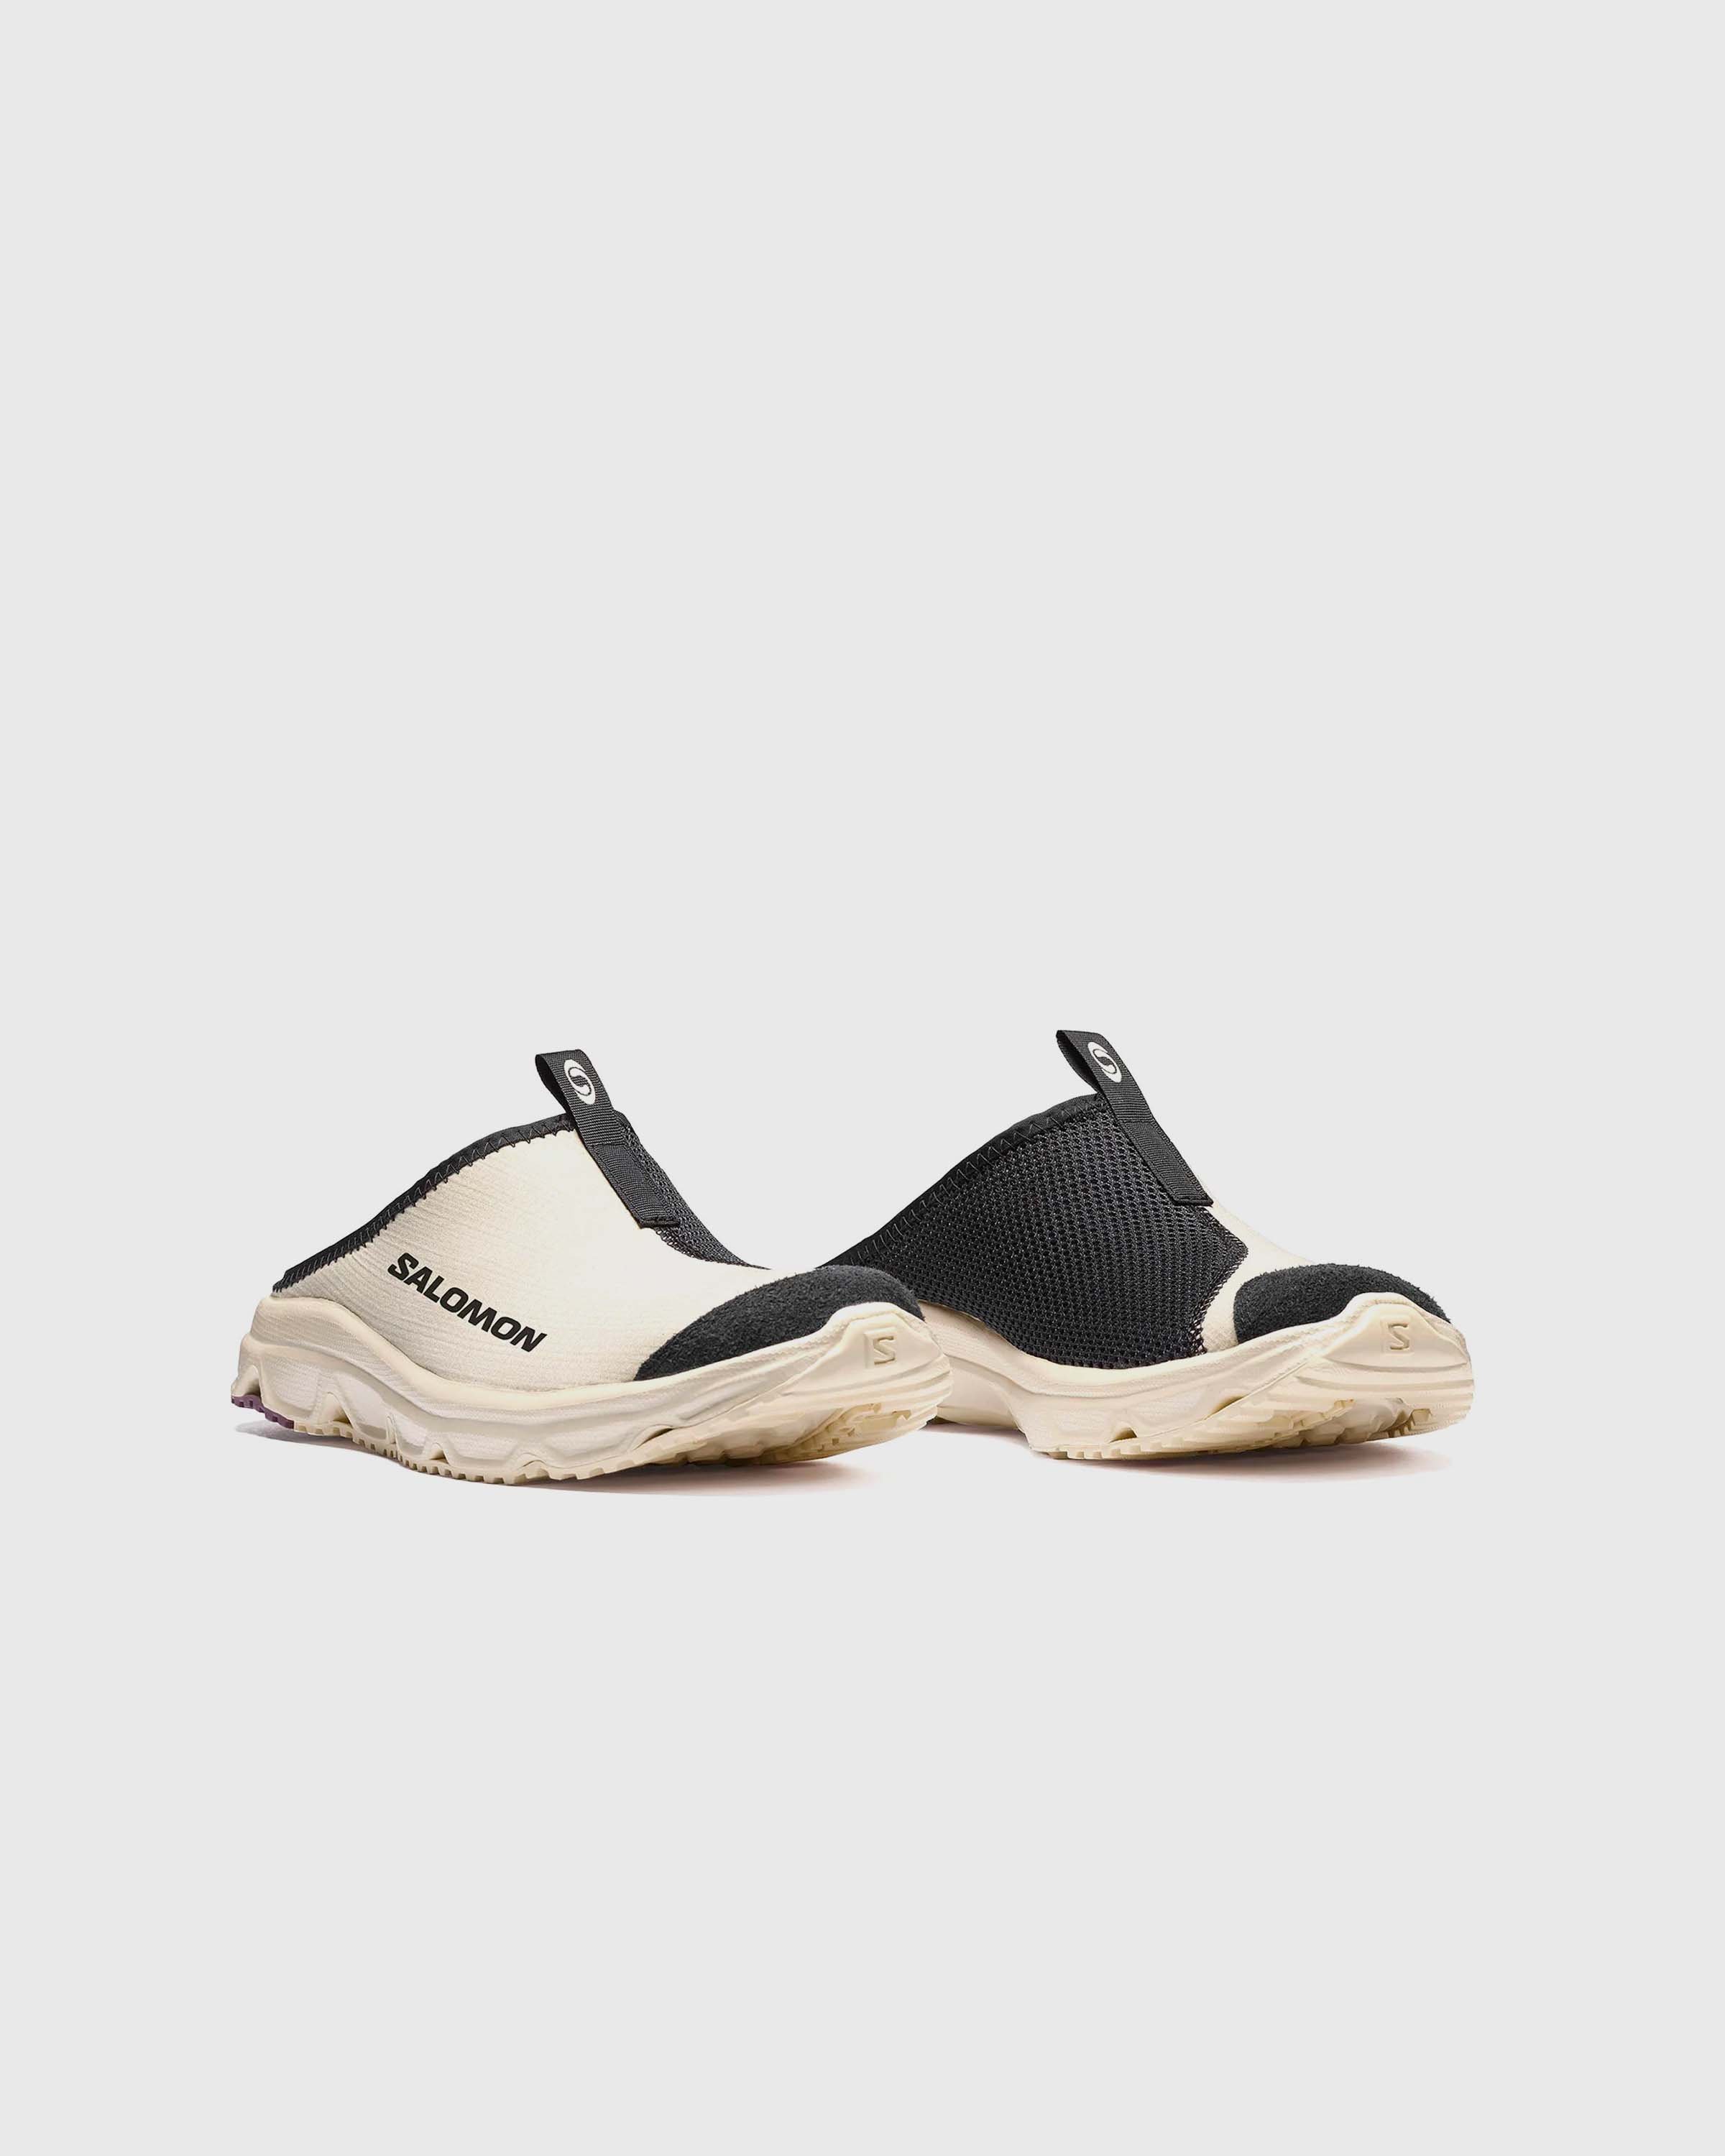 Salomon - RX Slide 3.0 Bleached Sand/Ebony - Footwear - Beige - Image 3